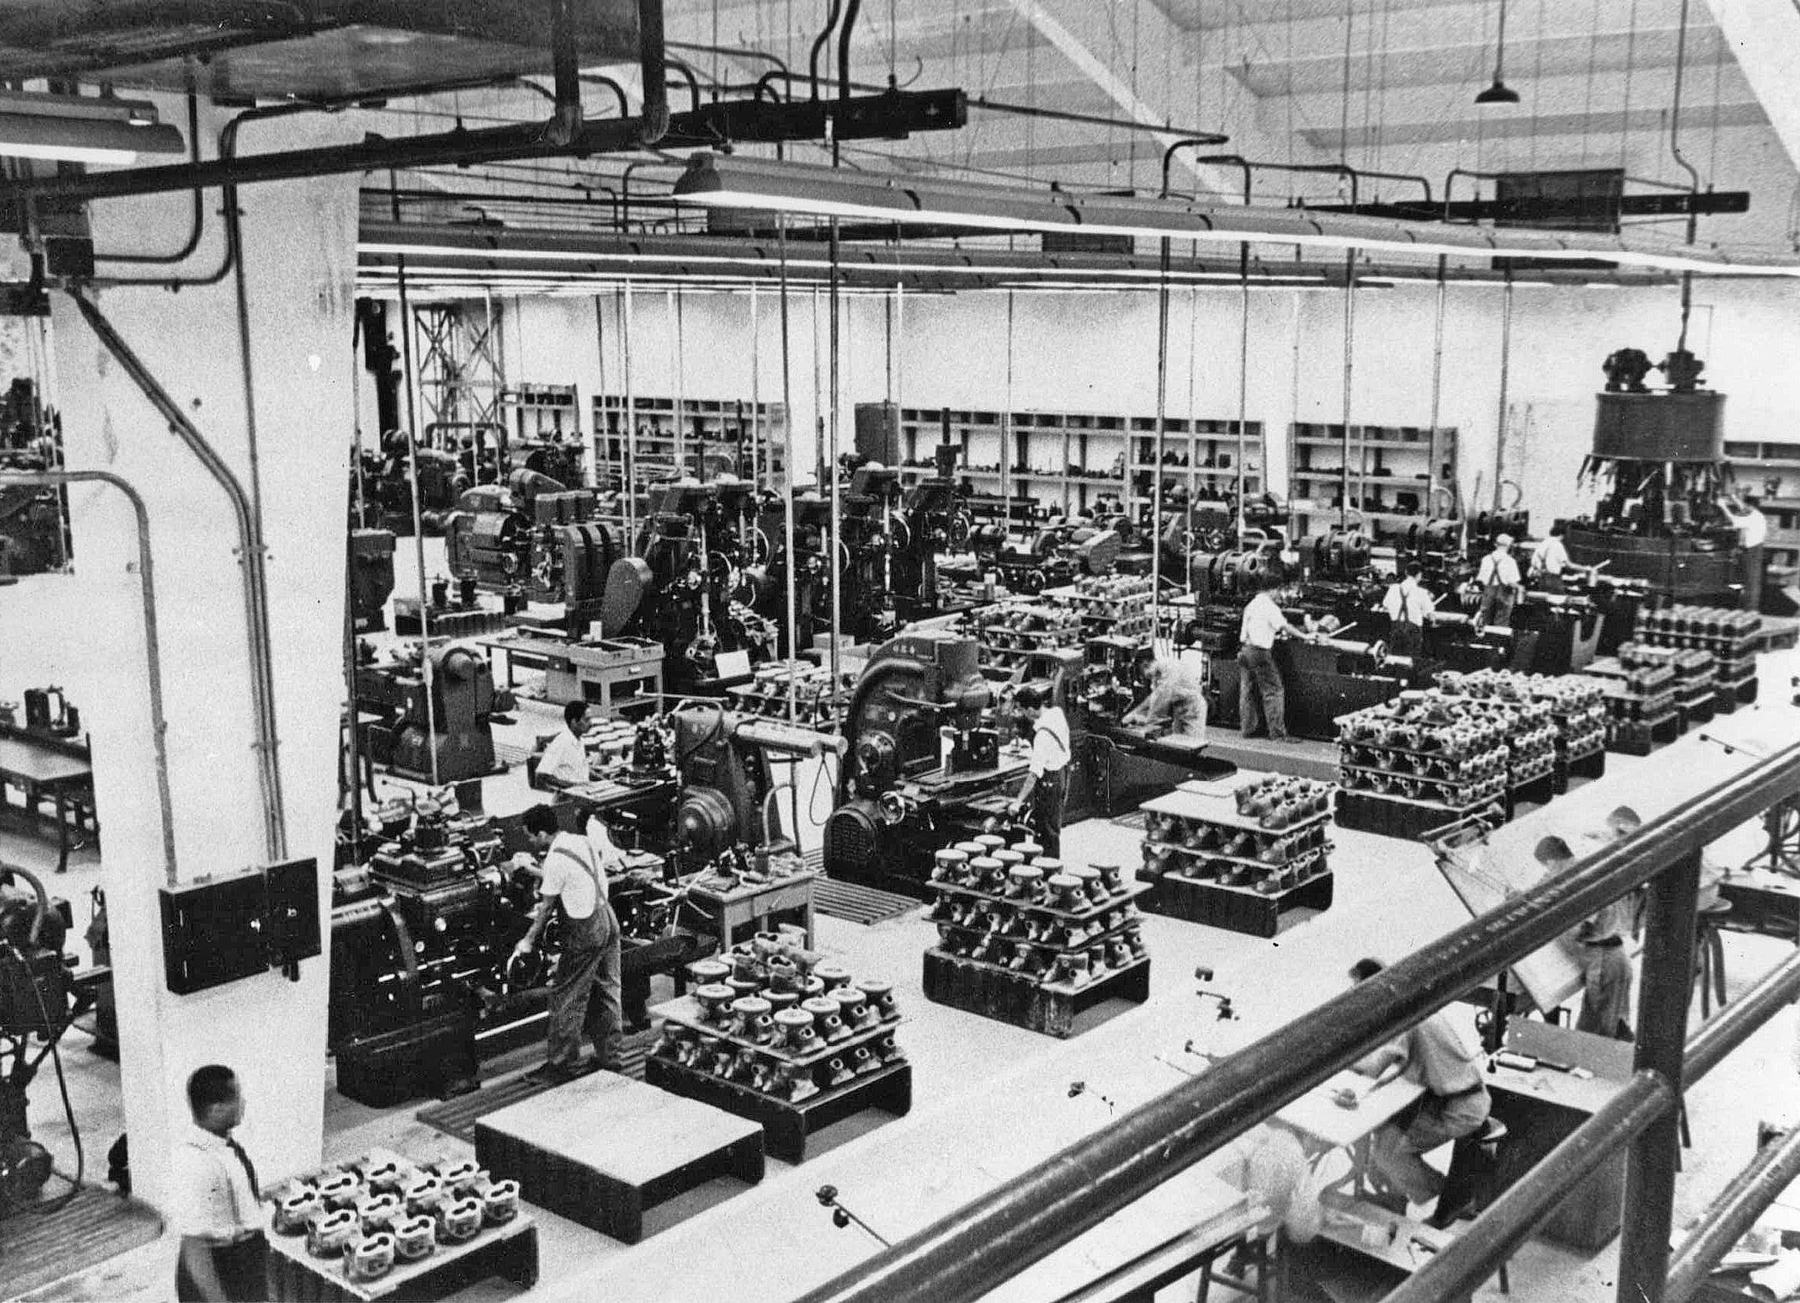 Fotografia em preto e branco. Vista do interior de uma fábrica, contendo maquinário, peças diversas, e homens por entre os corredores.